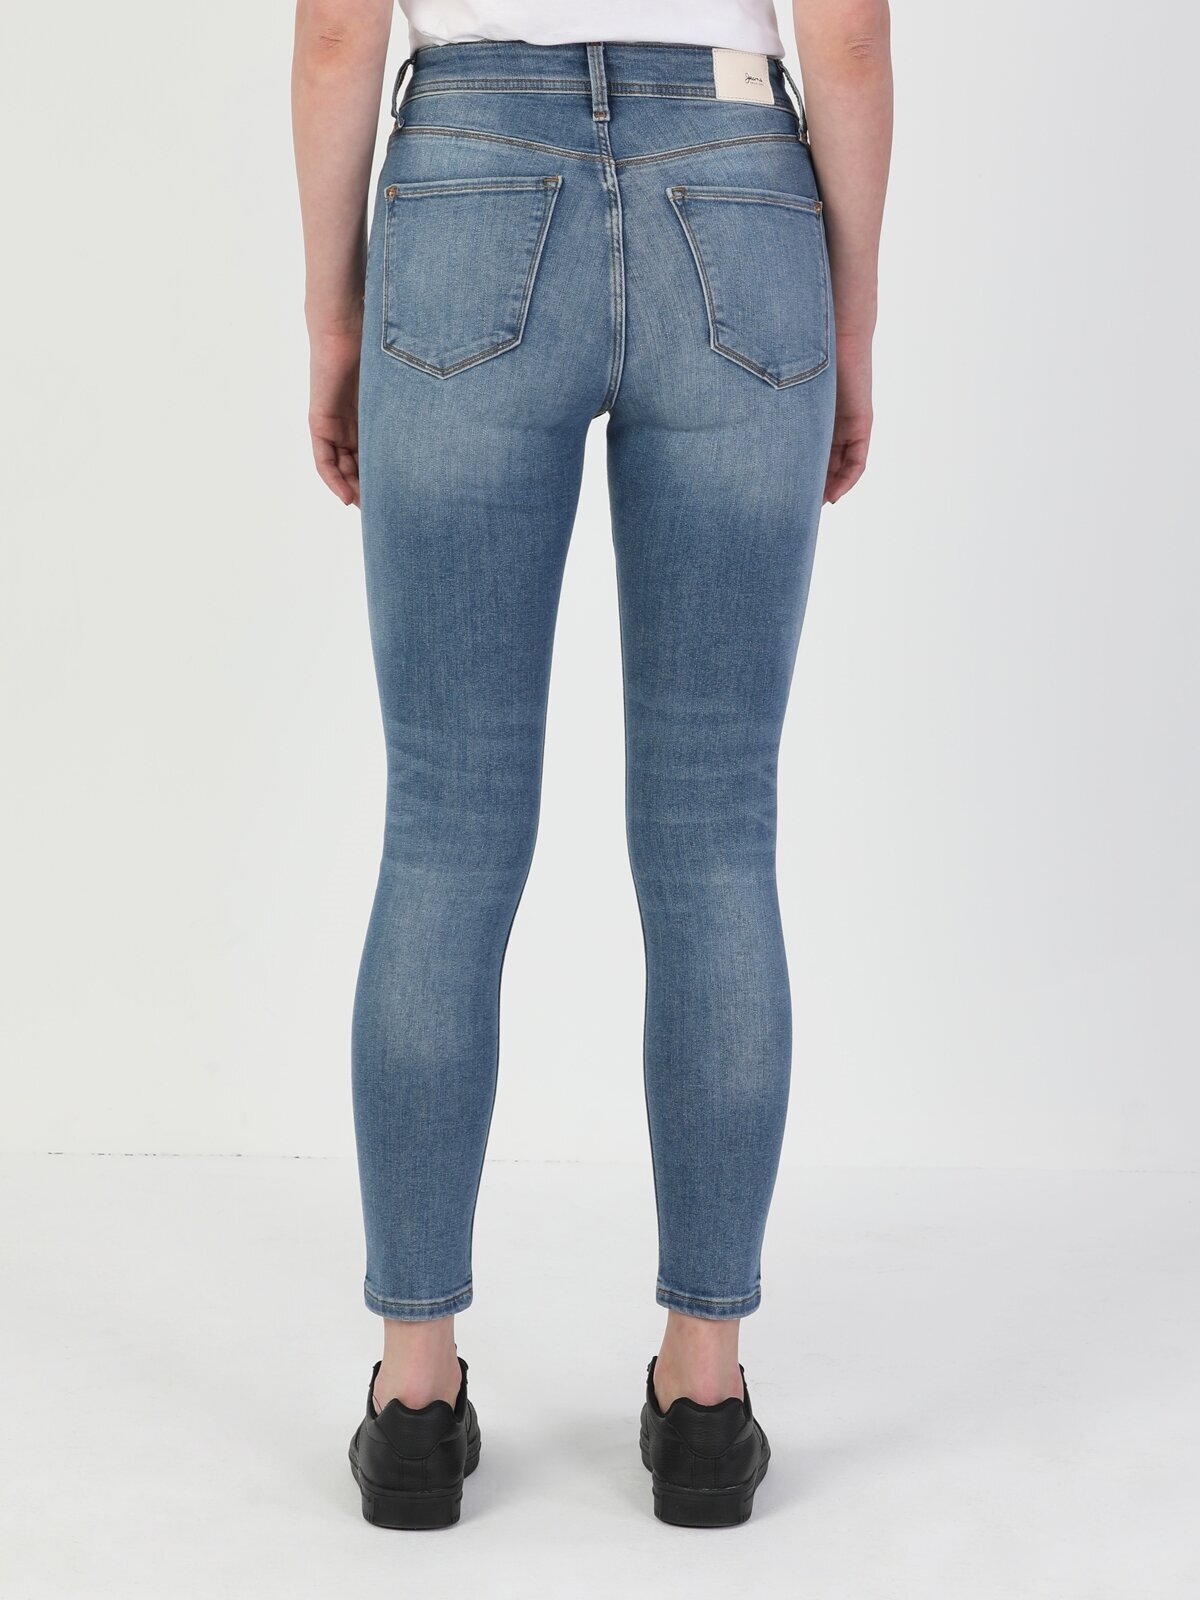 Colins 760 Dıana Yüksek Bel Dar Paça Super Slim Fit Açık Mavi Kadın Jean Pantolon. 2